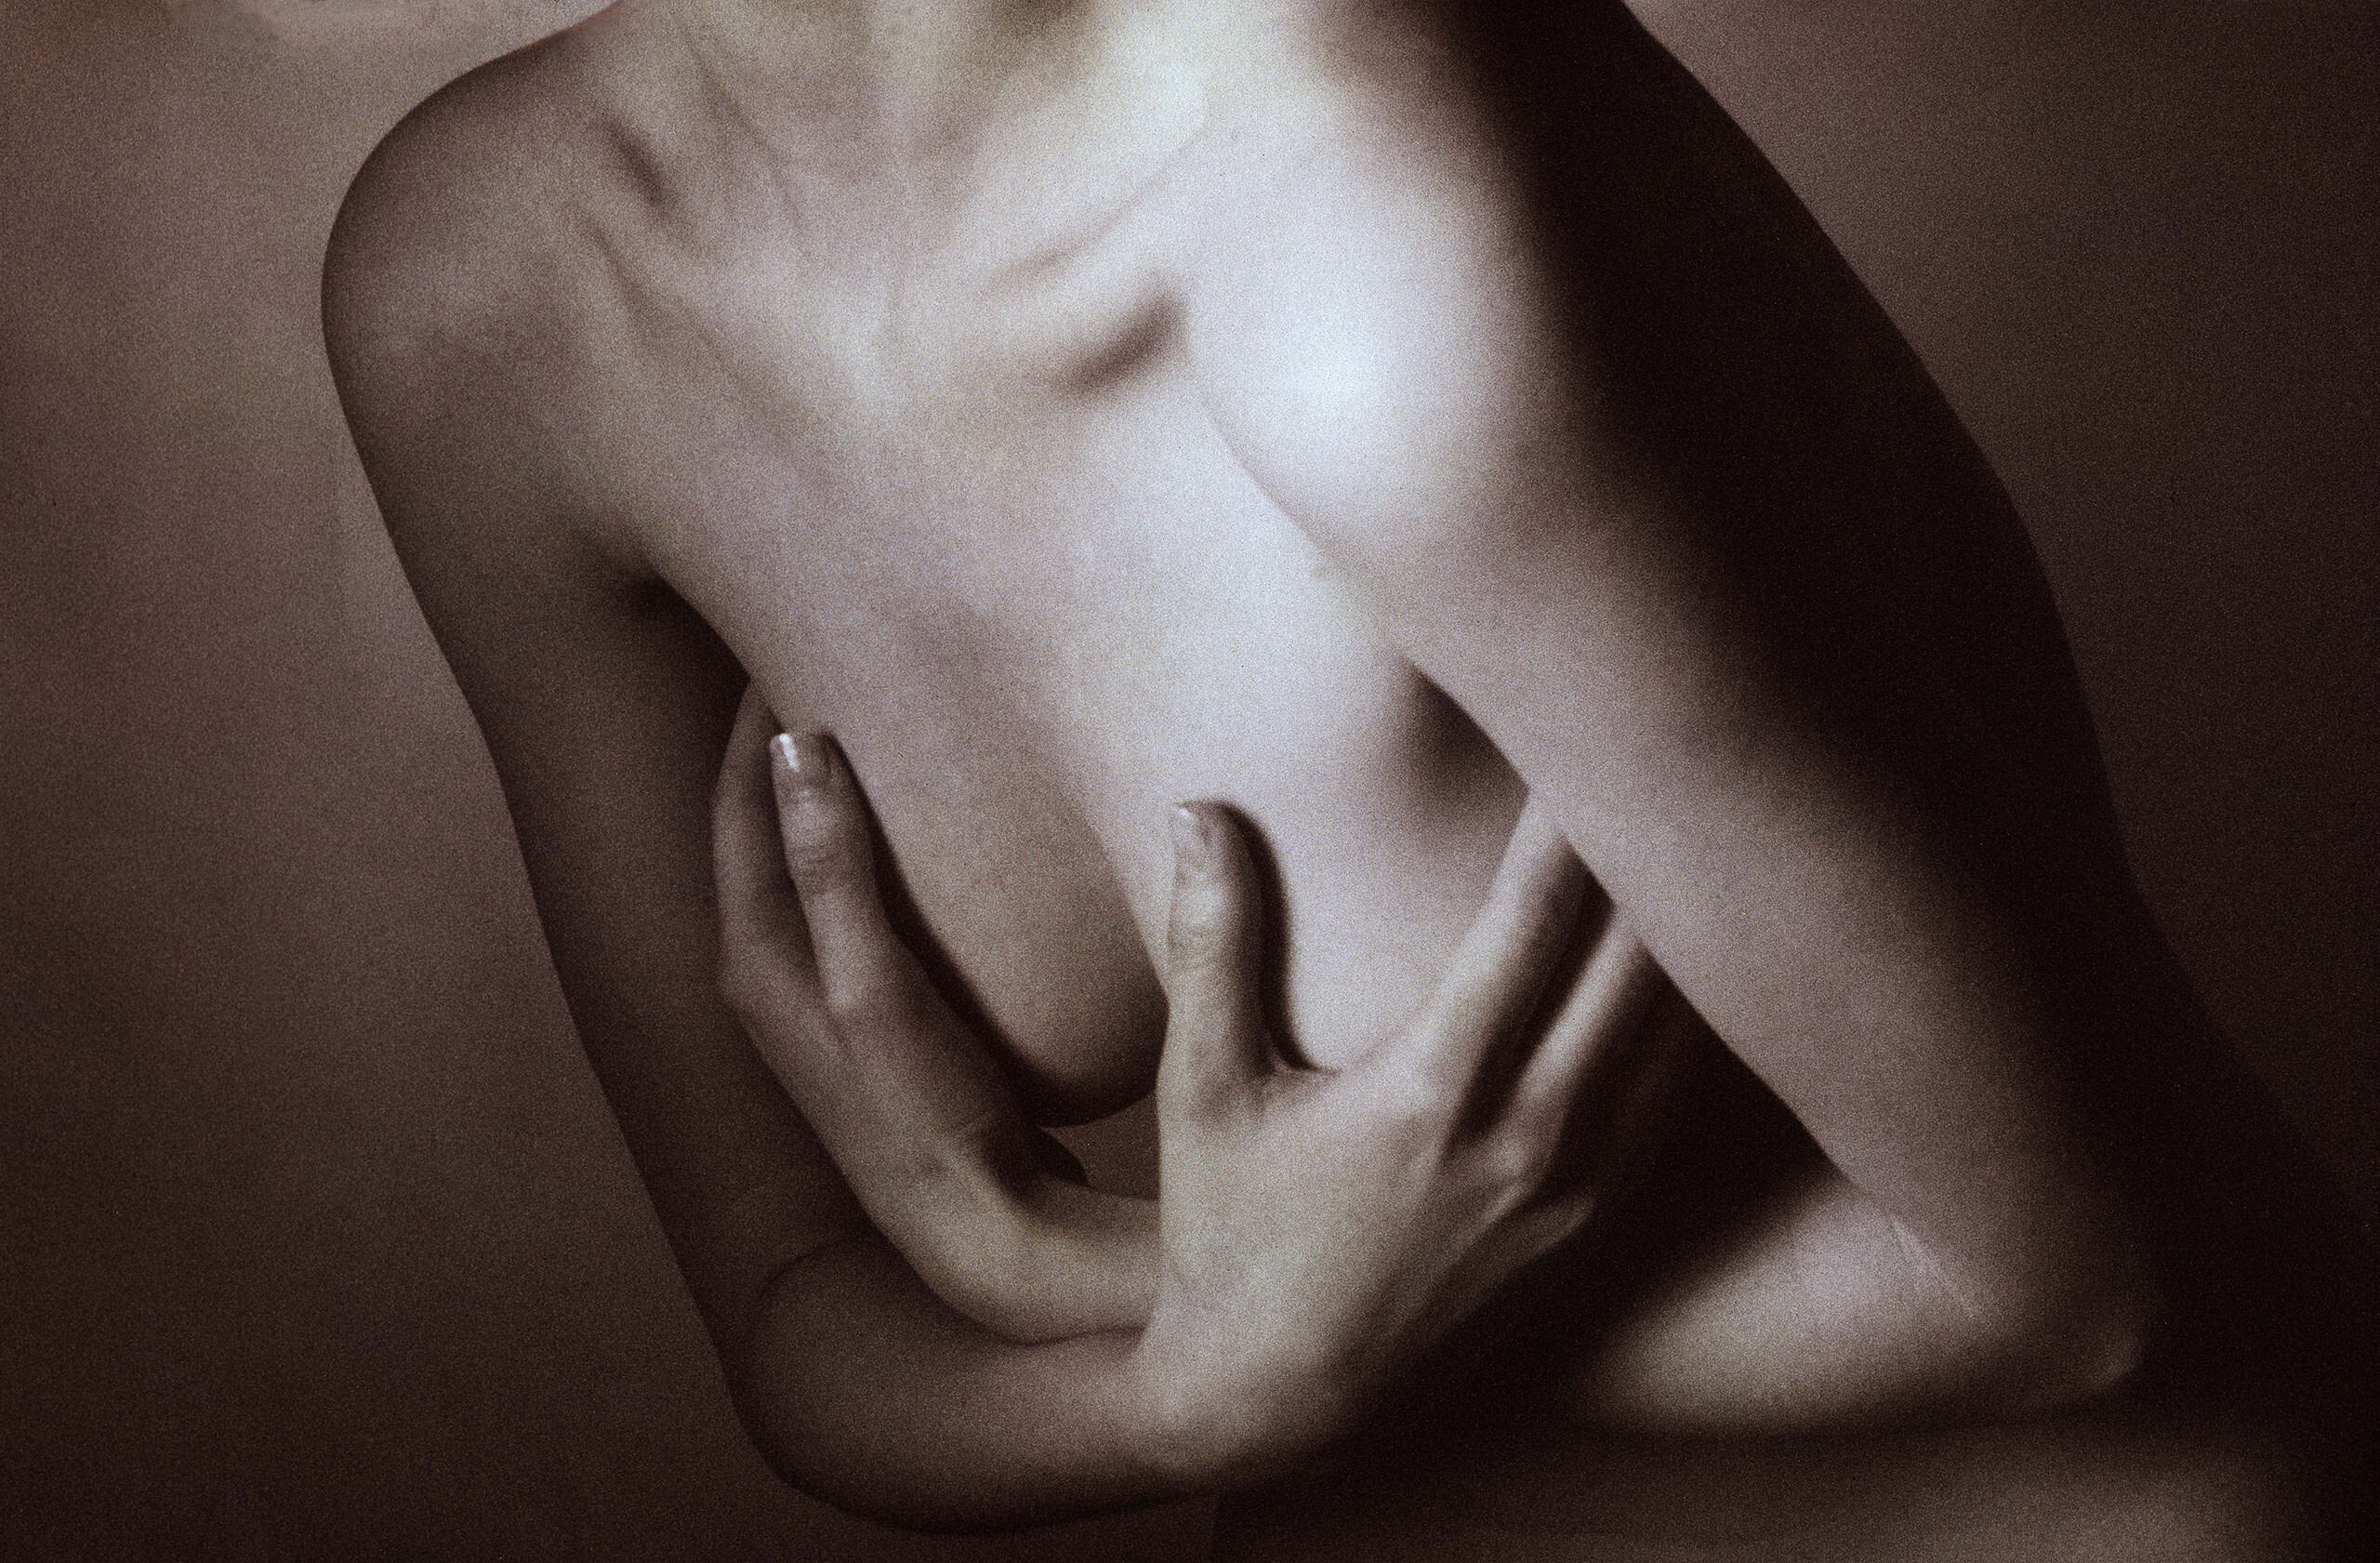 Прикрывая грудь. Фотограф Роберт Фарбер